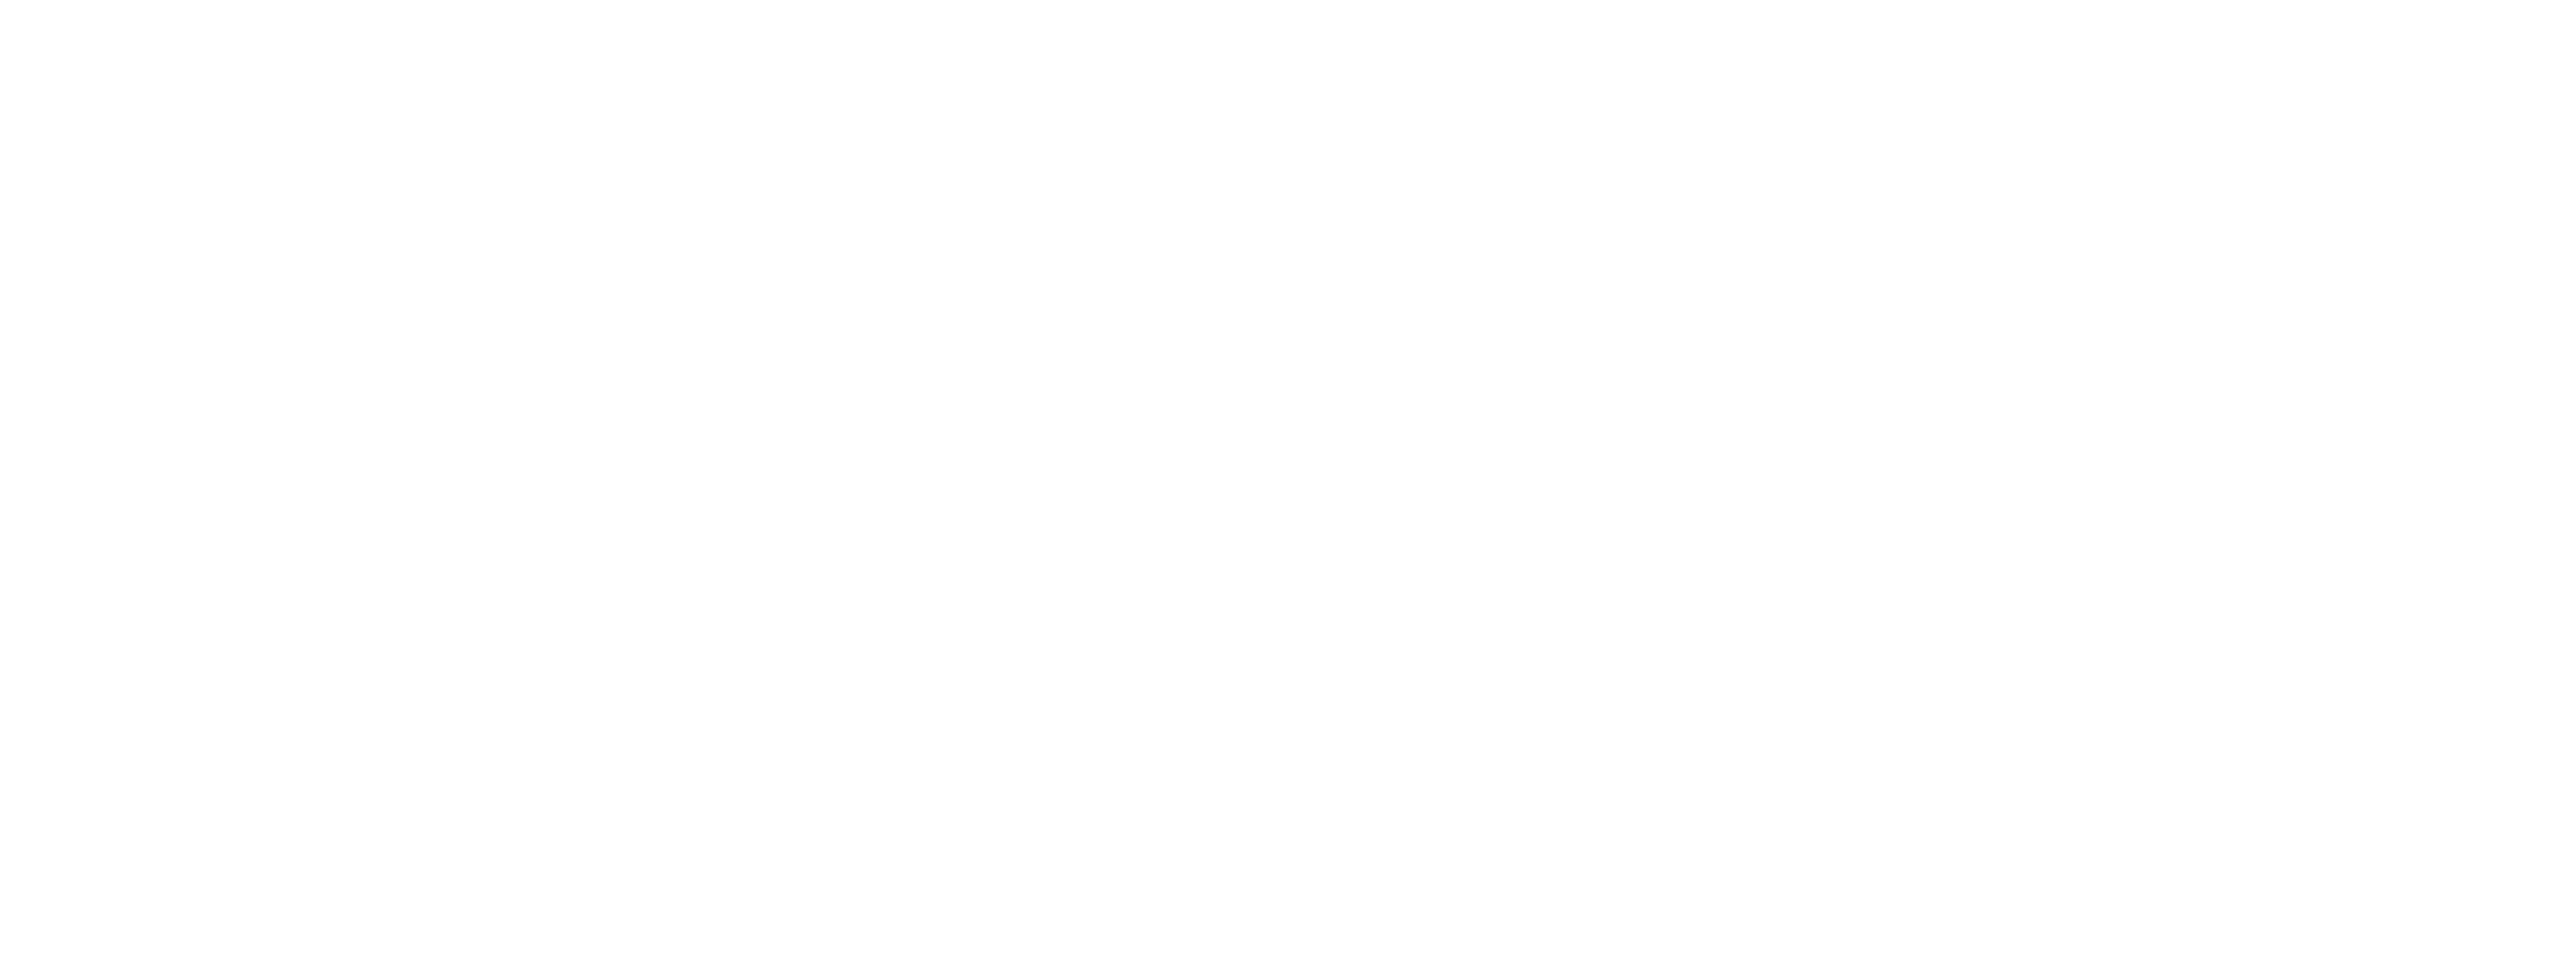 Brezdenpest Logo With Title White